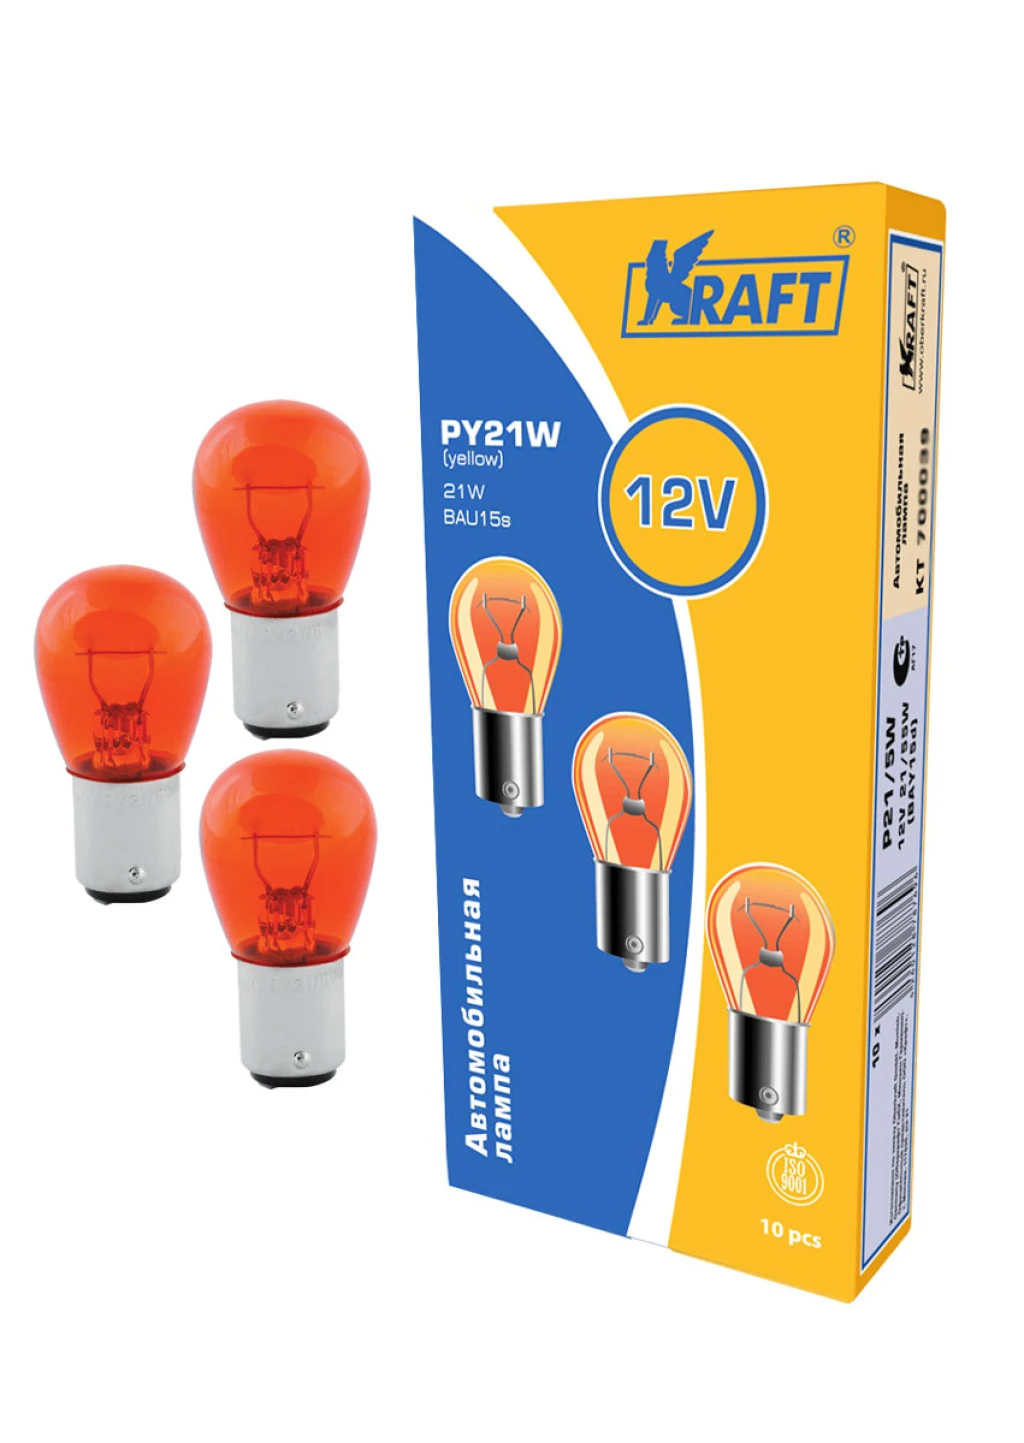 Лампа подсветки Kraft KT 700044 PY21W 12V 21W yellow, 1